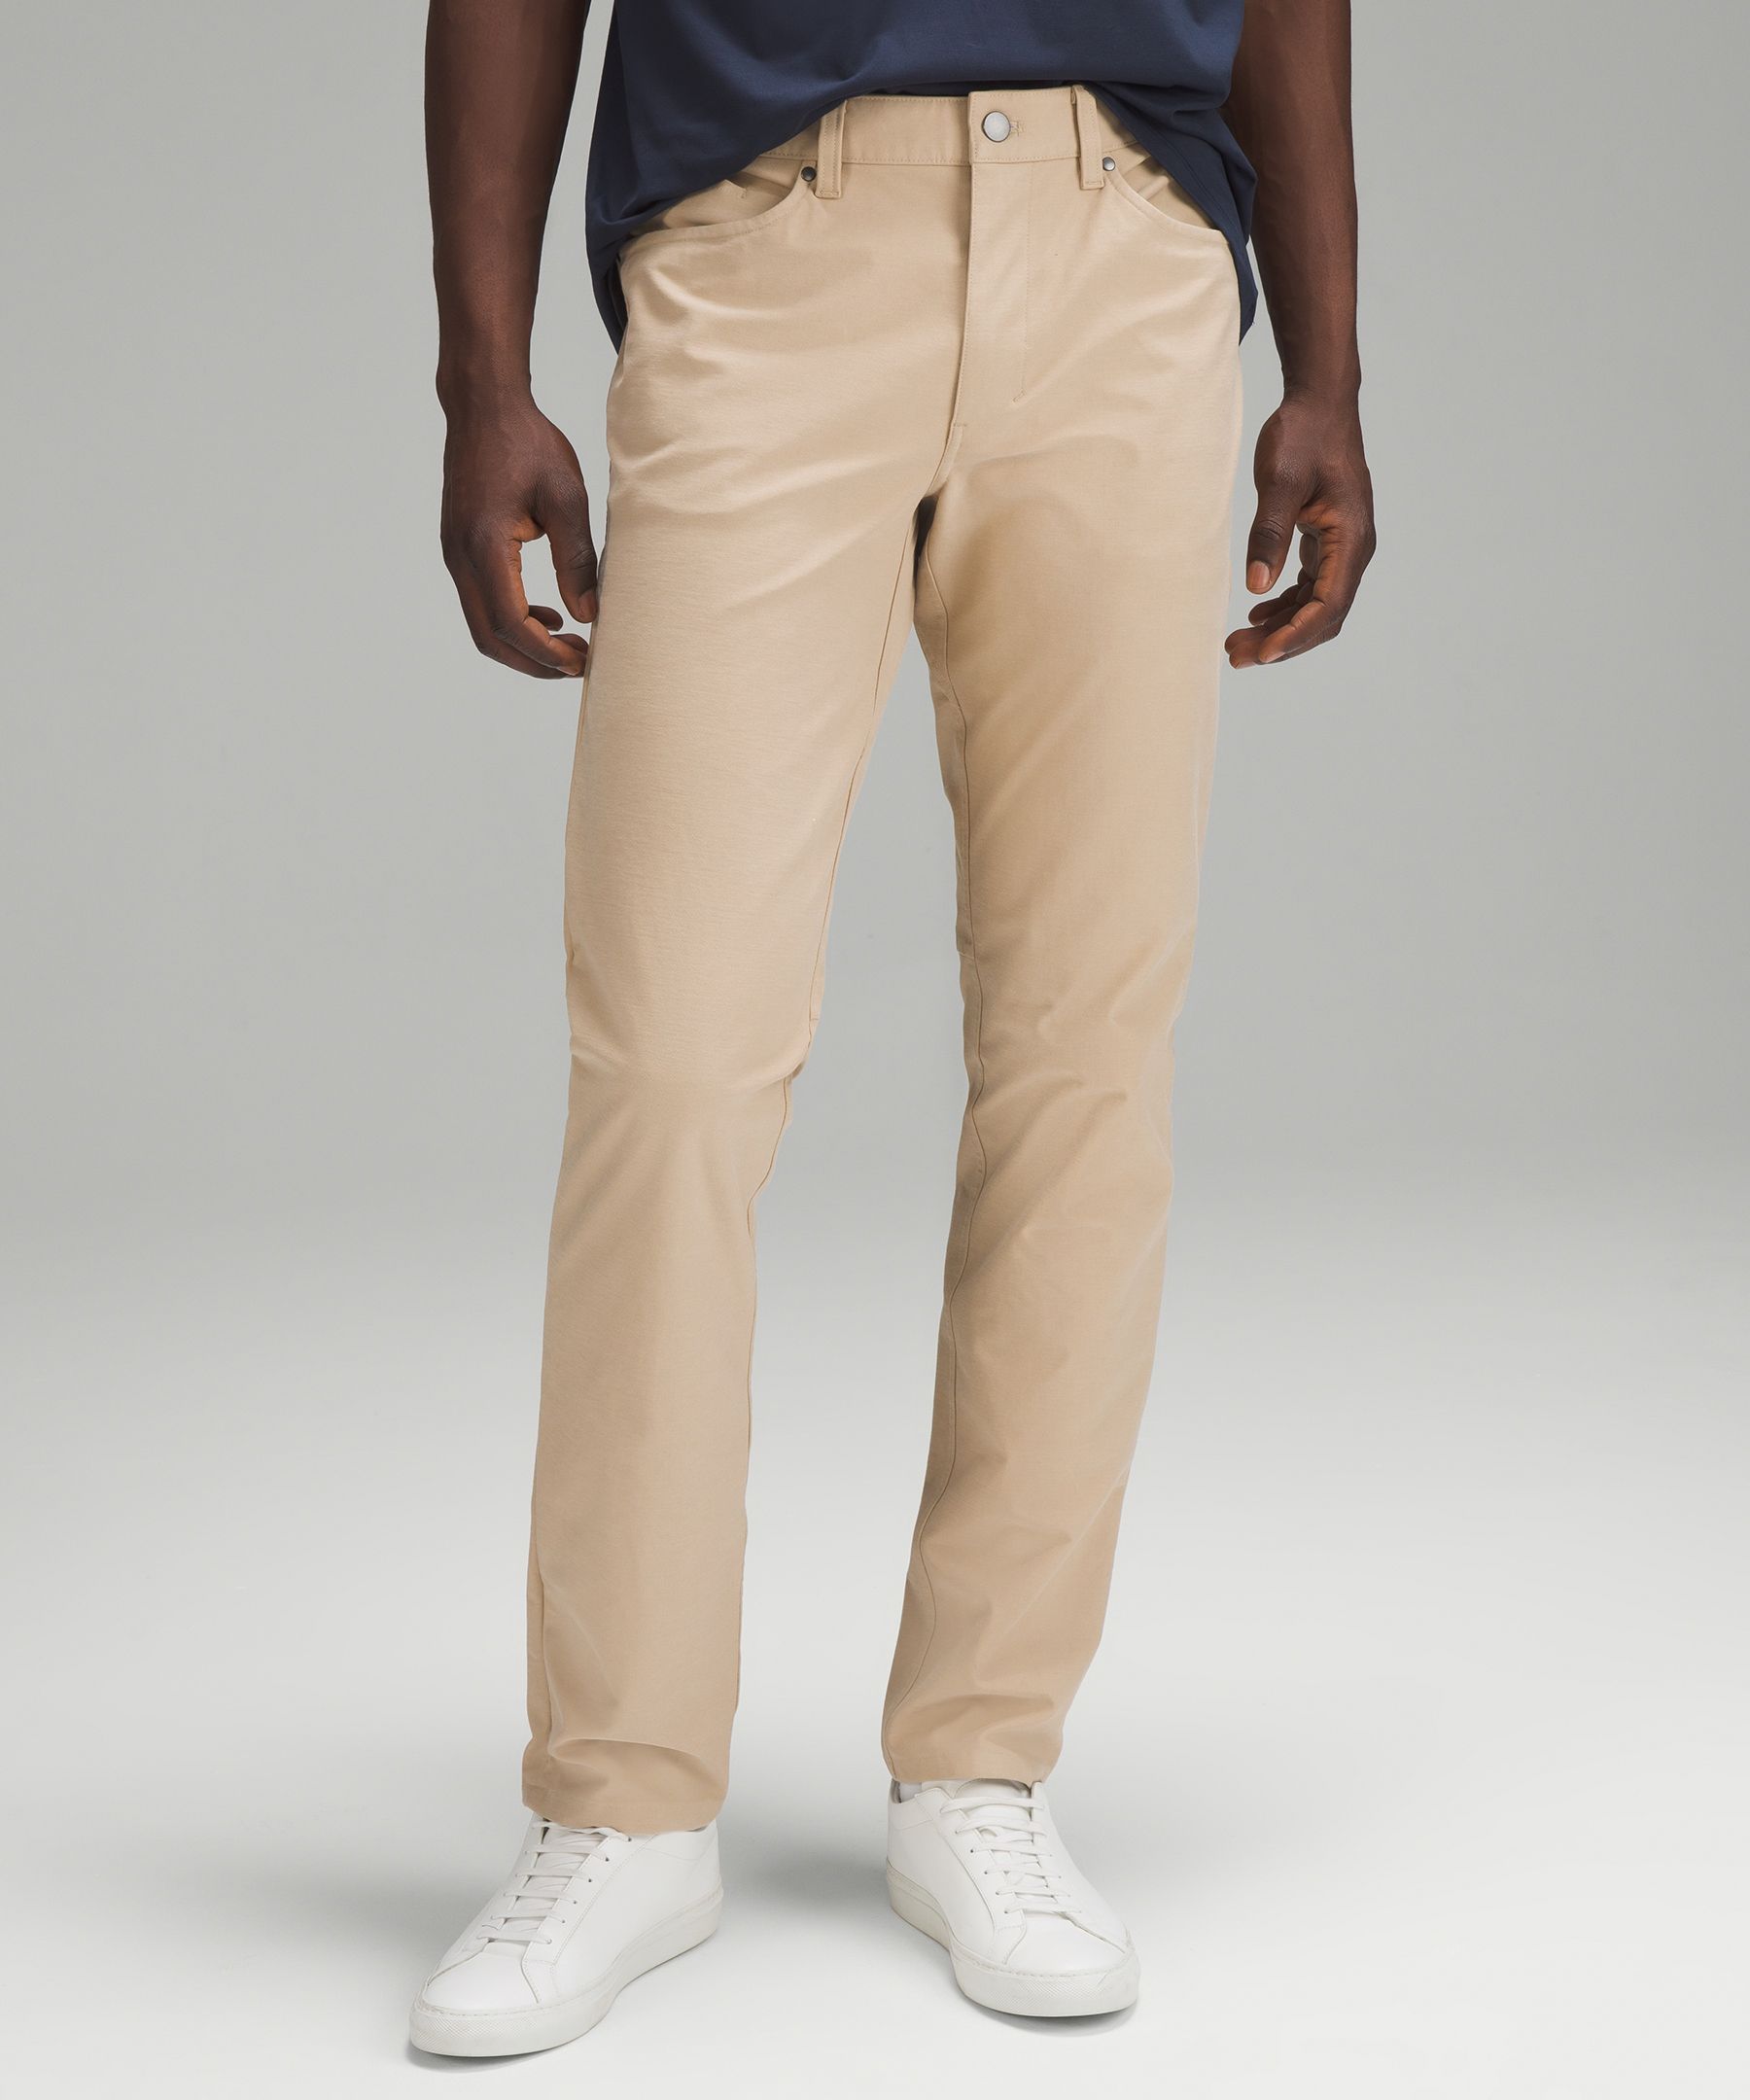 ABC Classic-Fit 5 Pocket Pant 34 *Utilitech, Men's Trousers